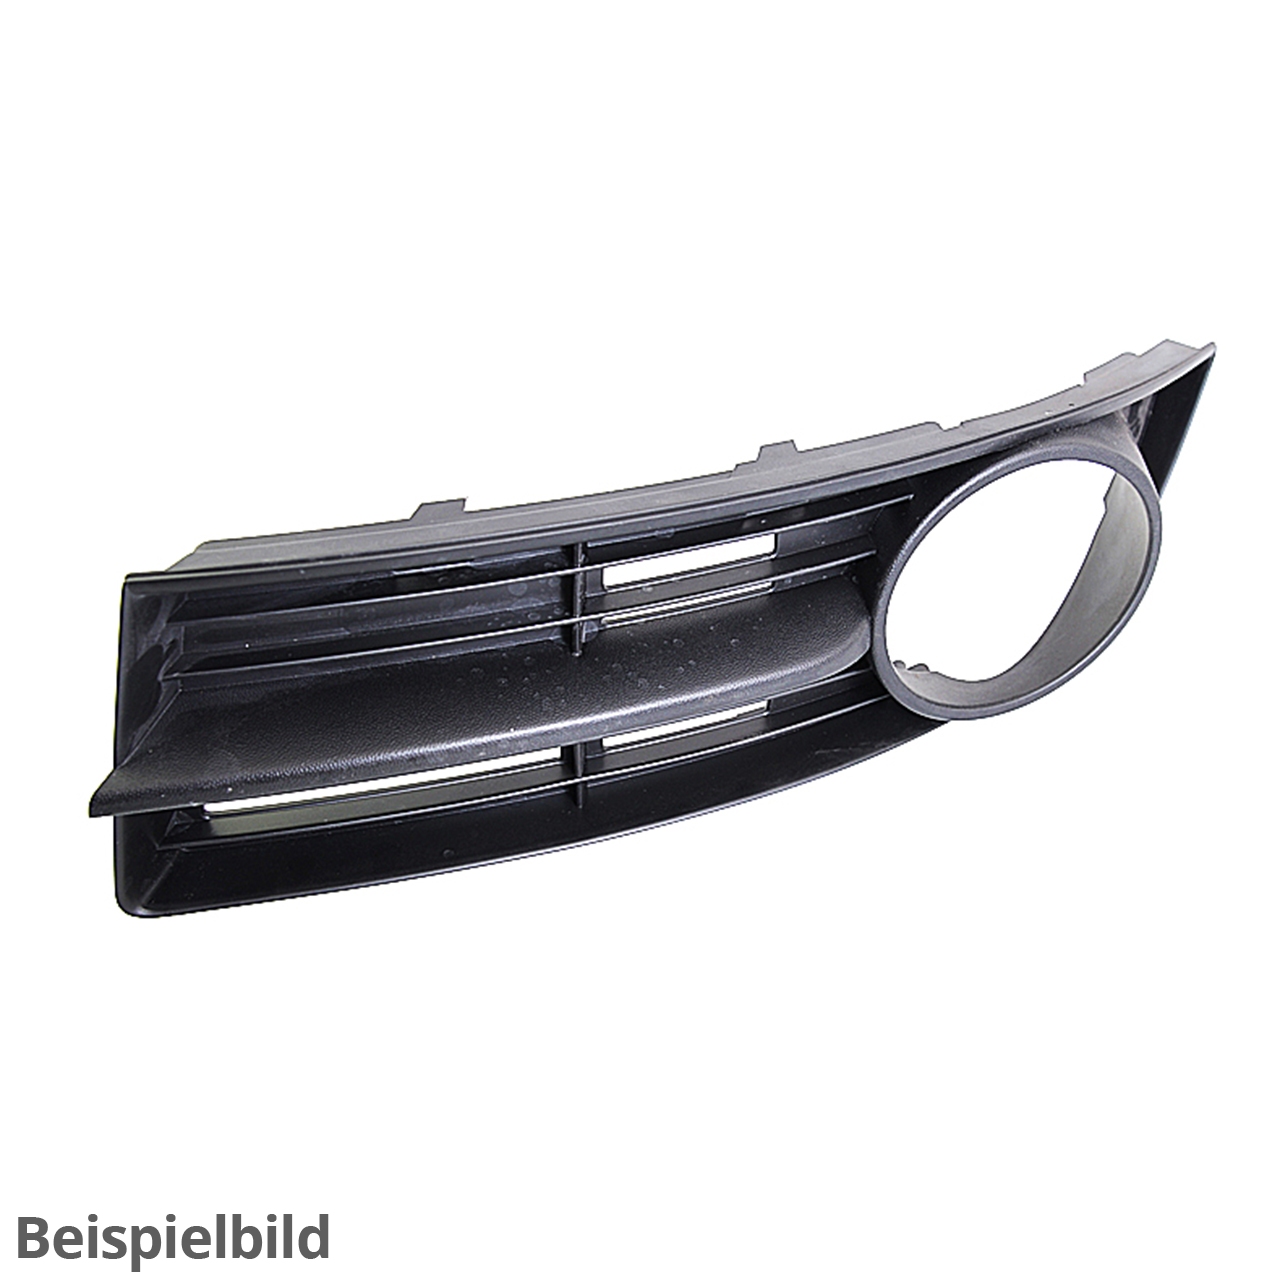 Schutzfolie schwarz für lackierte Stoßfänger VW Caddy 4/3 (ab 2011) -  Baschnagel Webshop